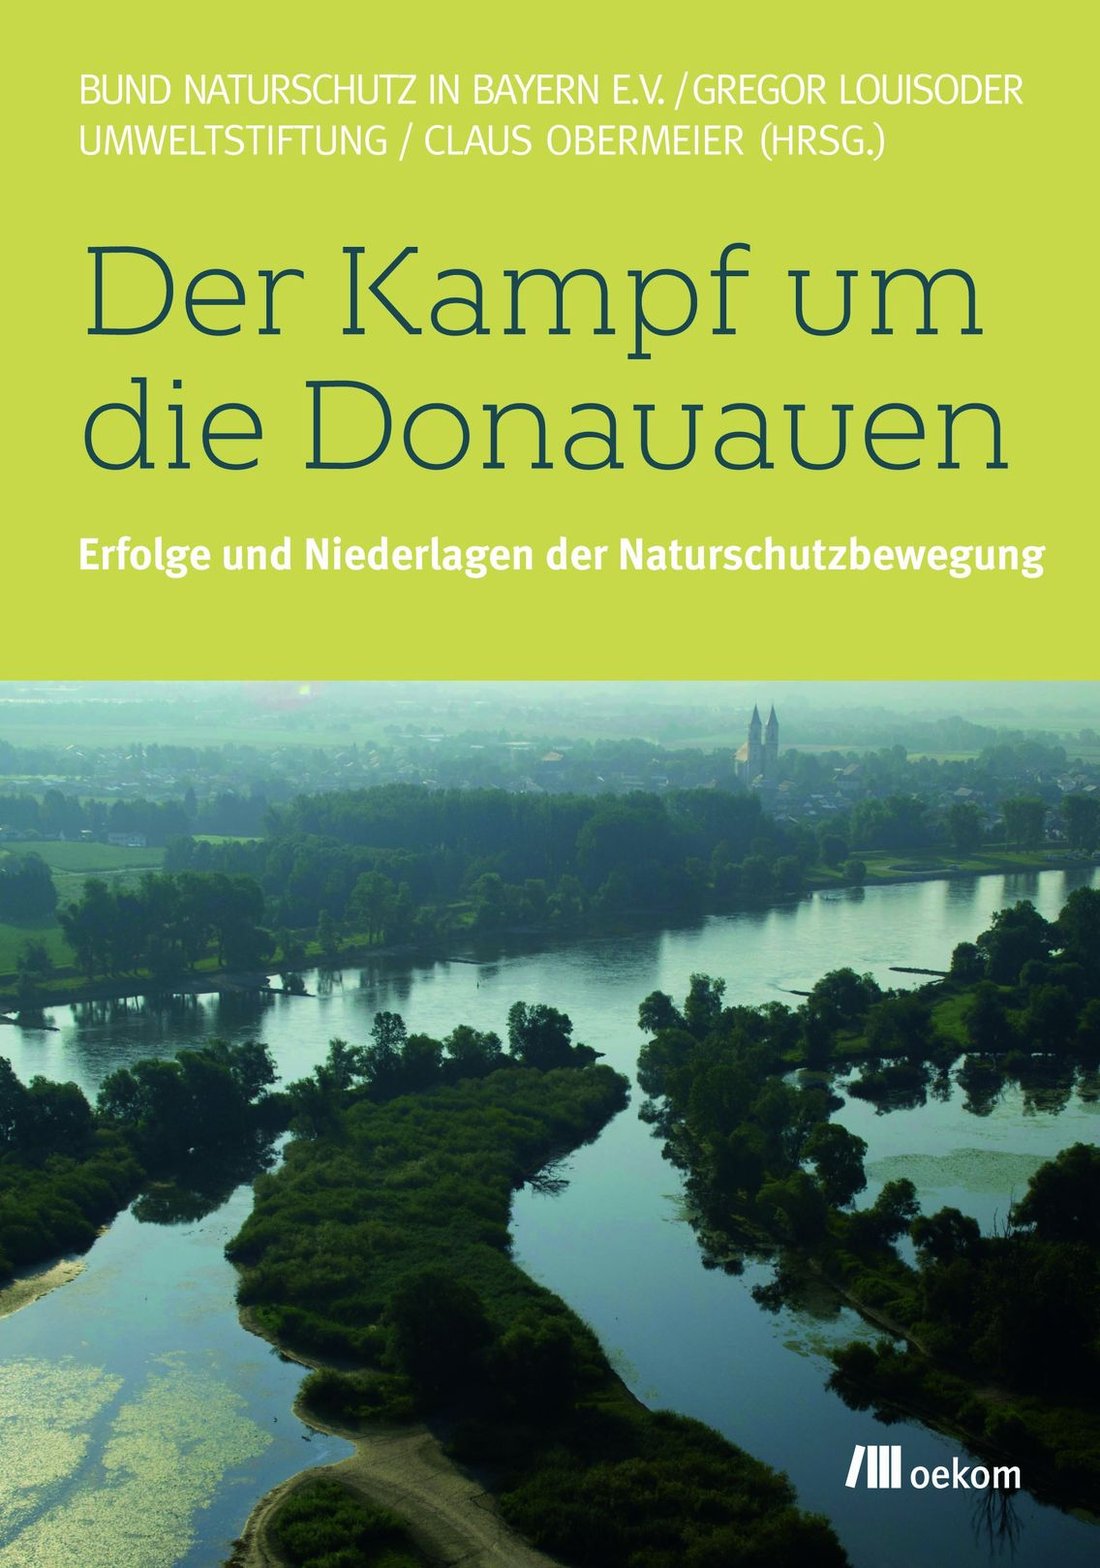 Der Kampf um die Donauauen – das Buch